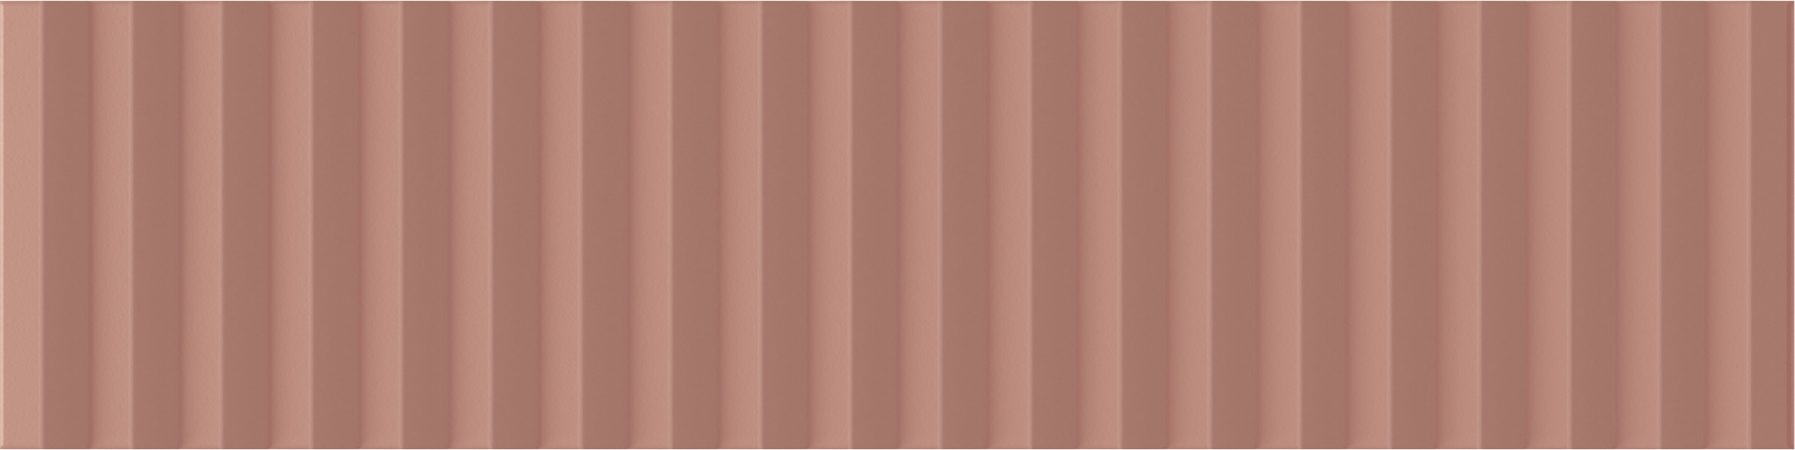 Керамическая плитка Wow Twin Peaks Med Cotto 131553, цвет терракотовый, поверхность матовая 3d (объёмная), под кирпич, 75x300